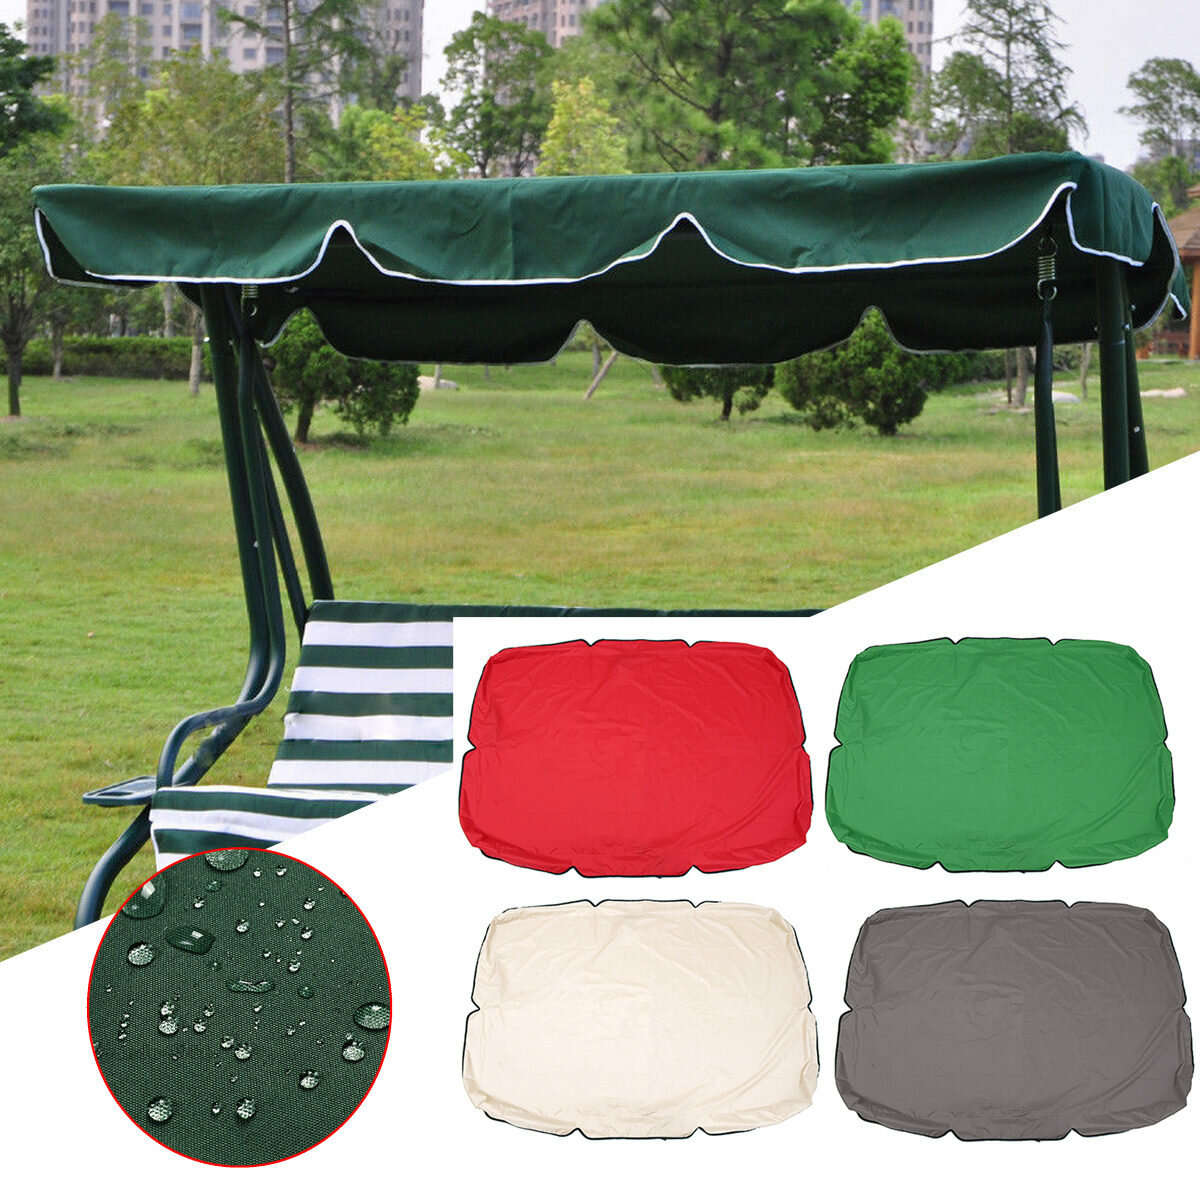 Capa de proteção superior de verão para balanço, capa substituta impermeável para cadeira de jardim ou pátio, toldo para balanço cadeira de rede